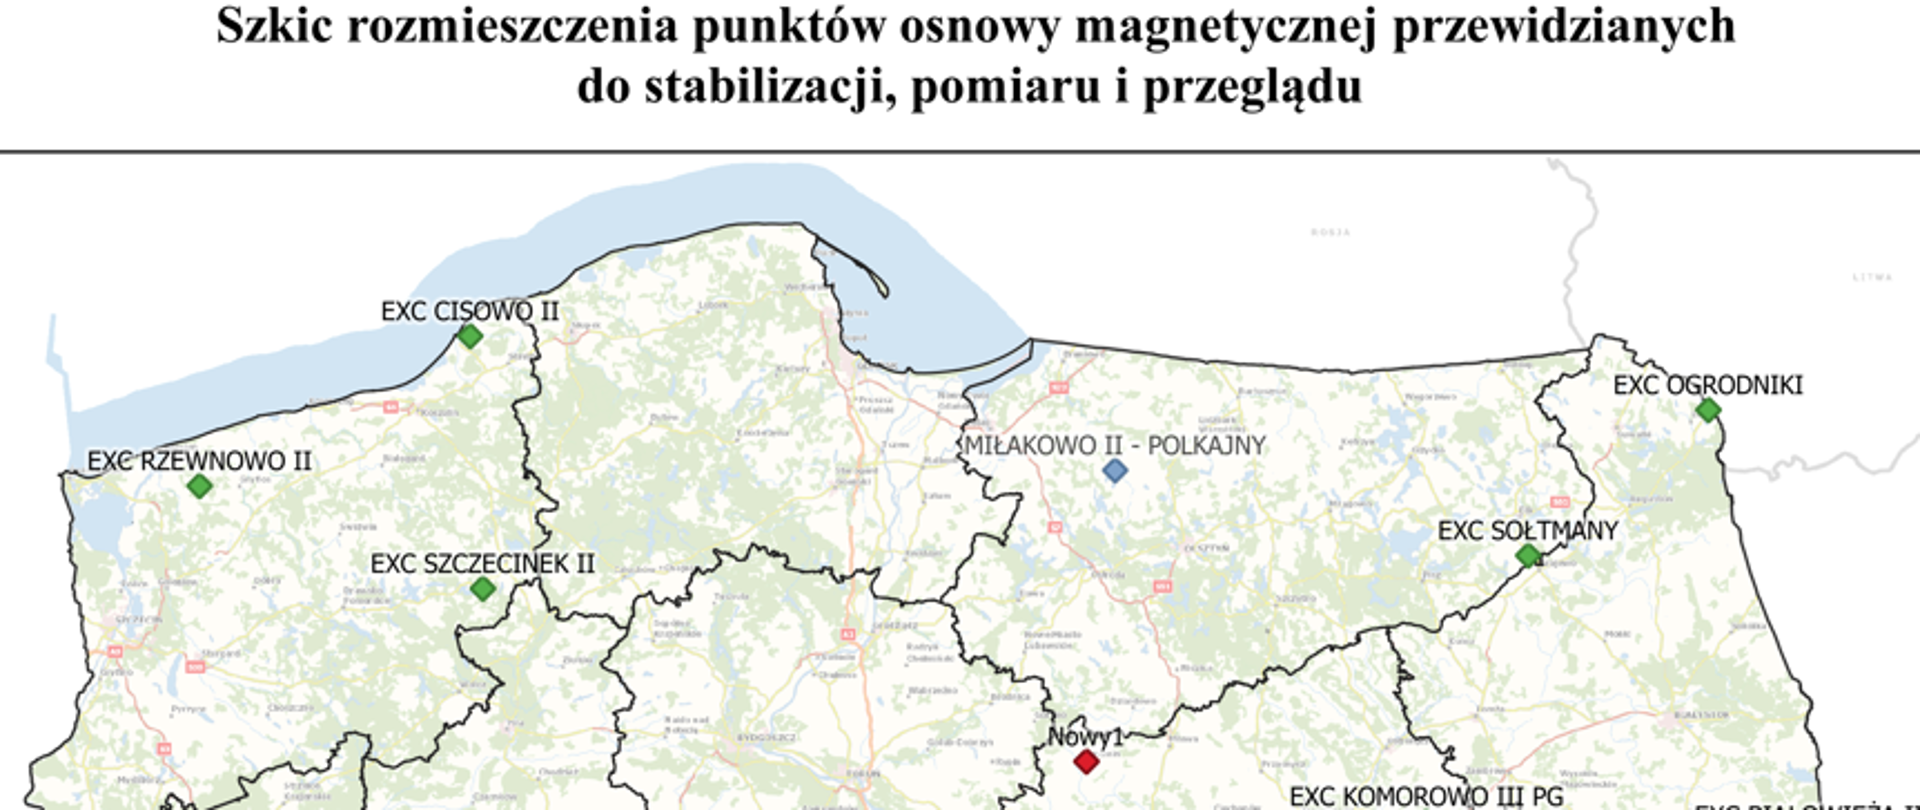 Ilustracja przedstawia mapę Polski z rozmieszczeniem punktów osnowy magnetycznej przewidzianych do stabilizacji, przeglądu i pomiaru.